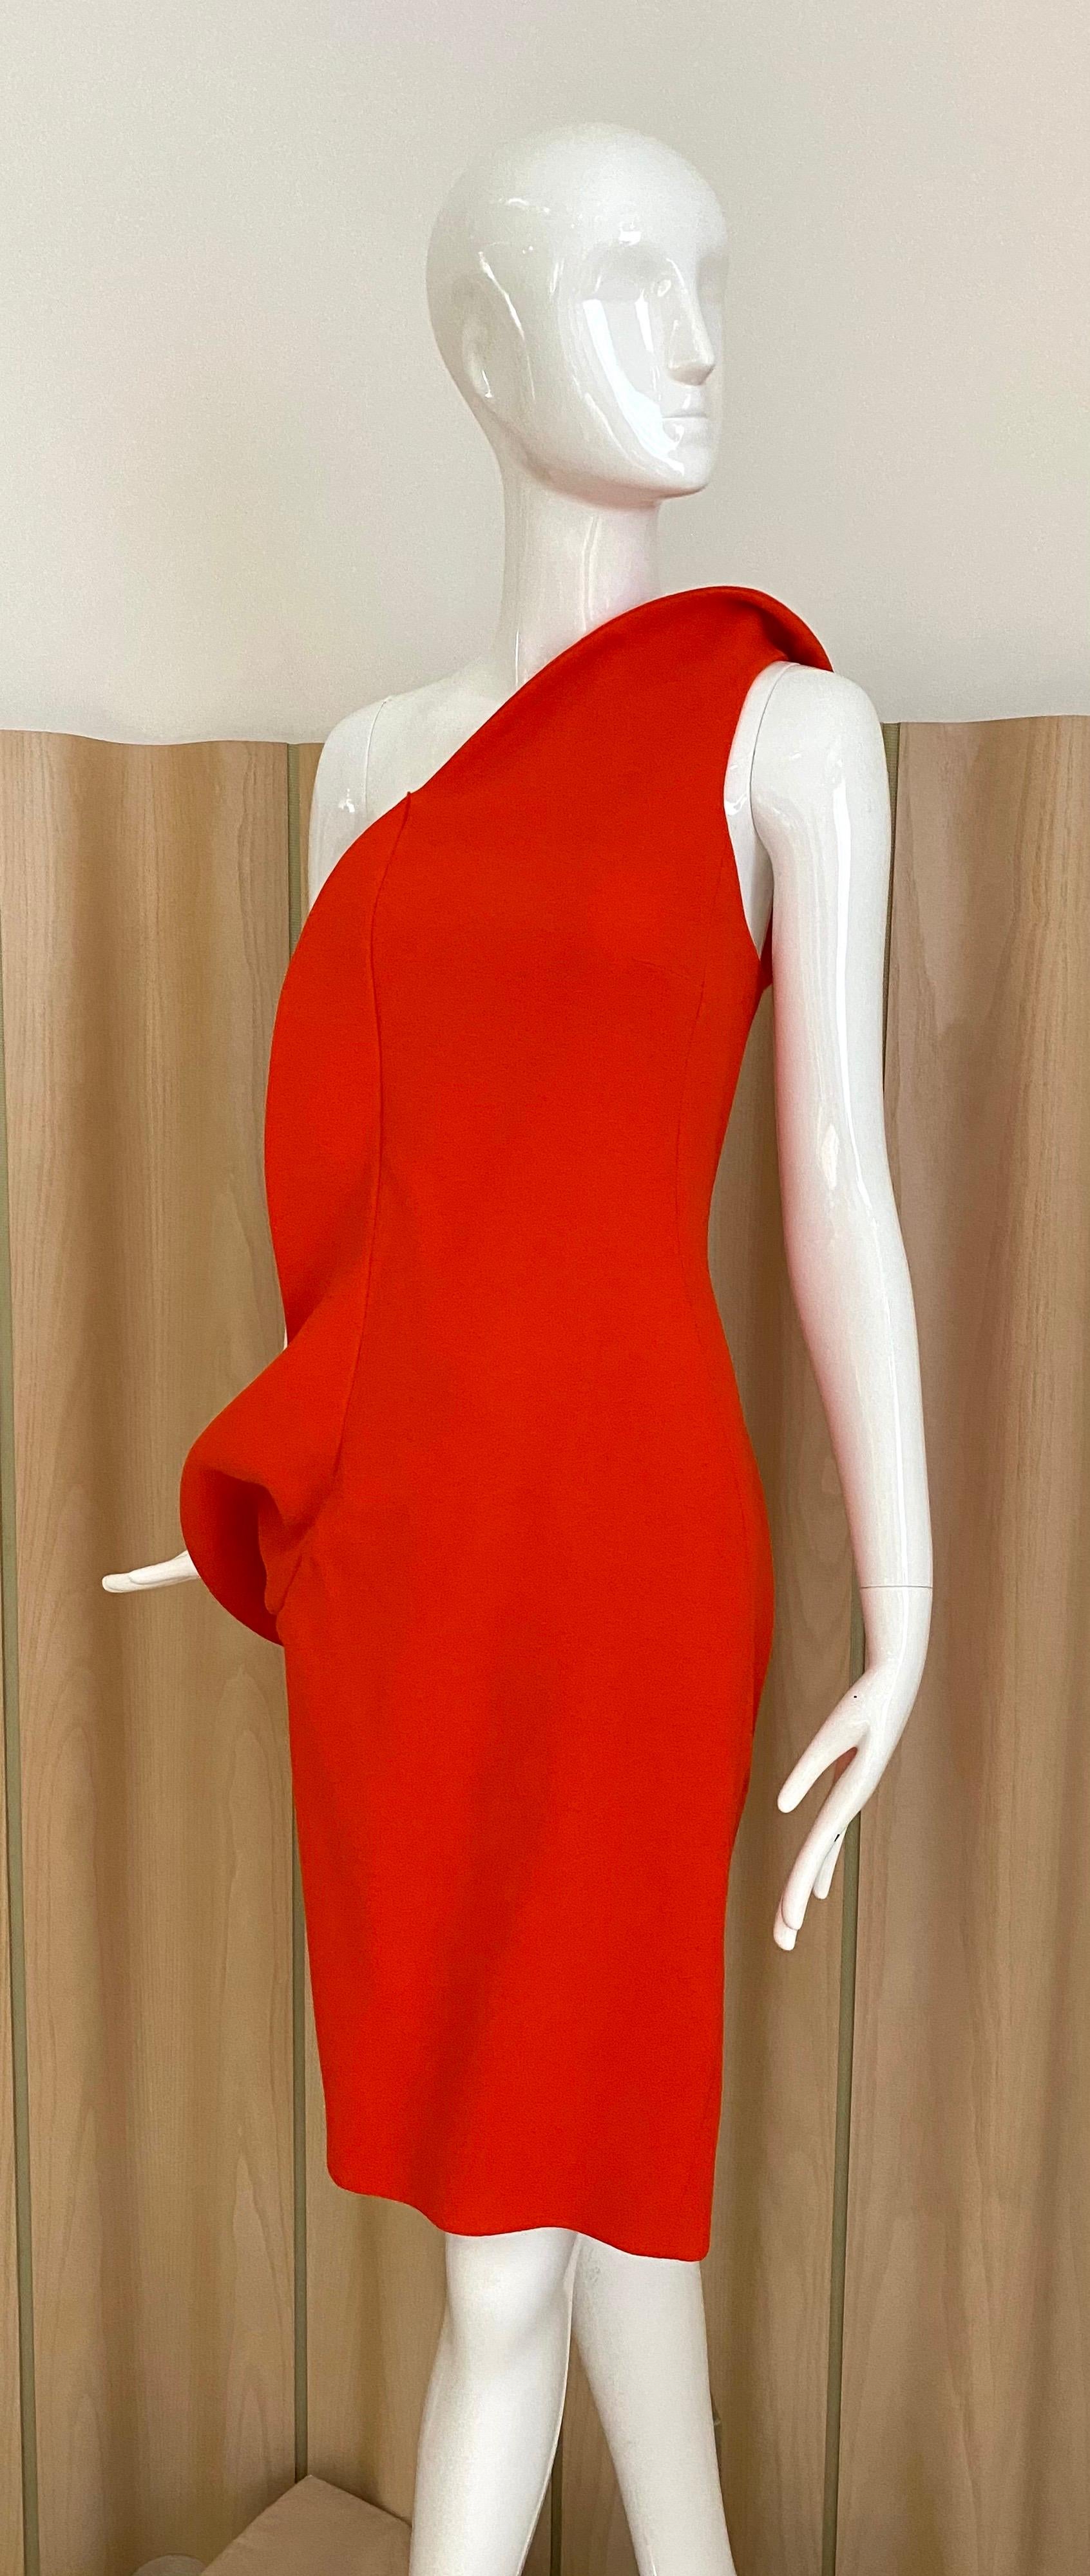 Sander one shoulder crepe dress designed by Raf Simons. dress lined in silk. Size 40
Fit size US 6 
bust - 36